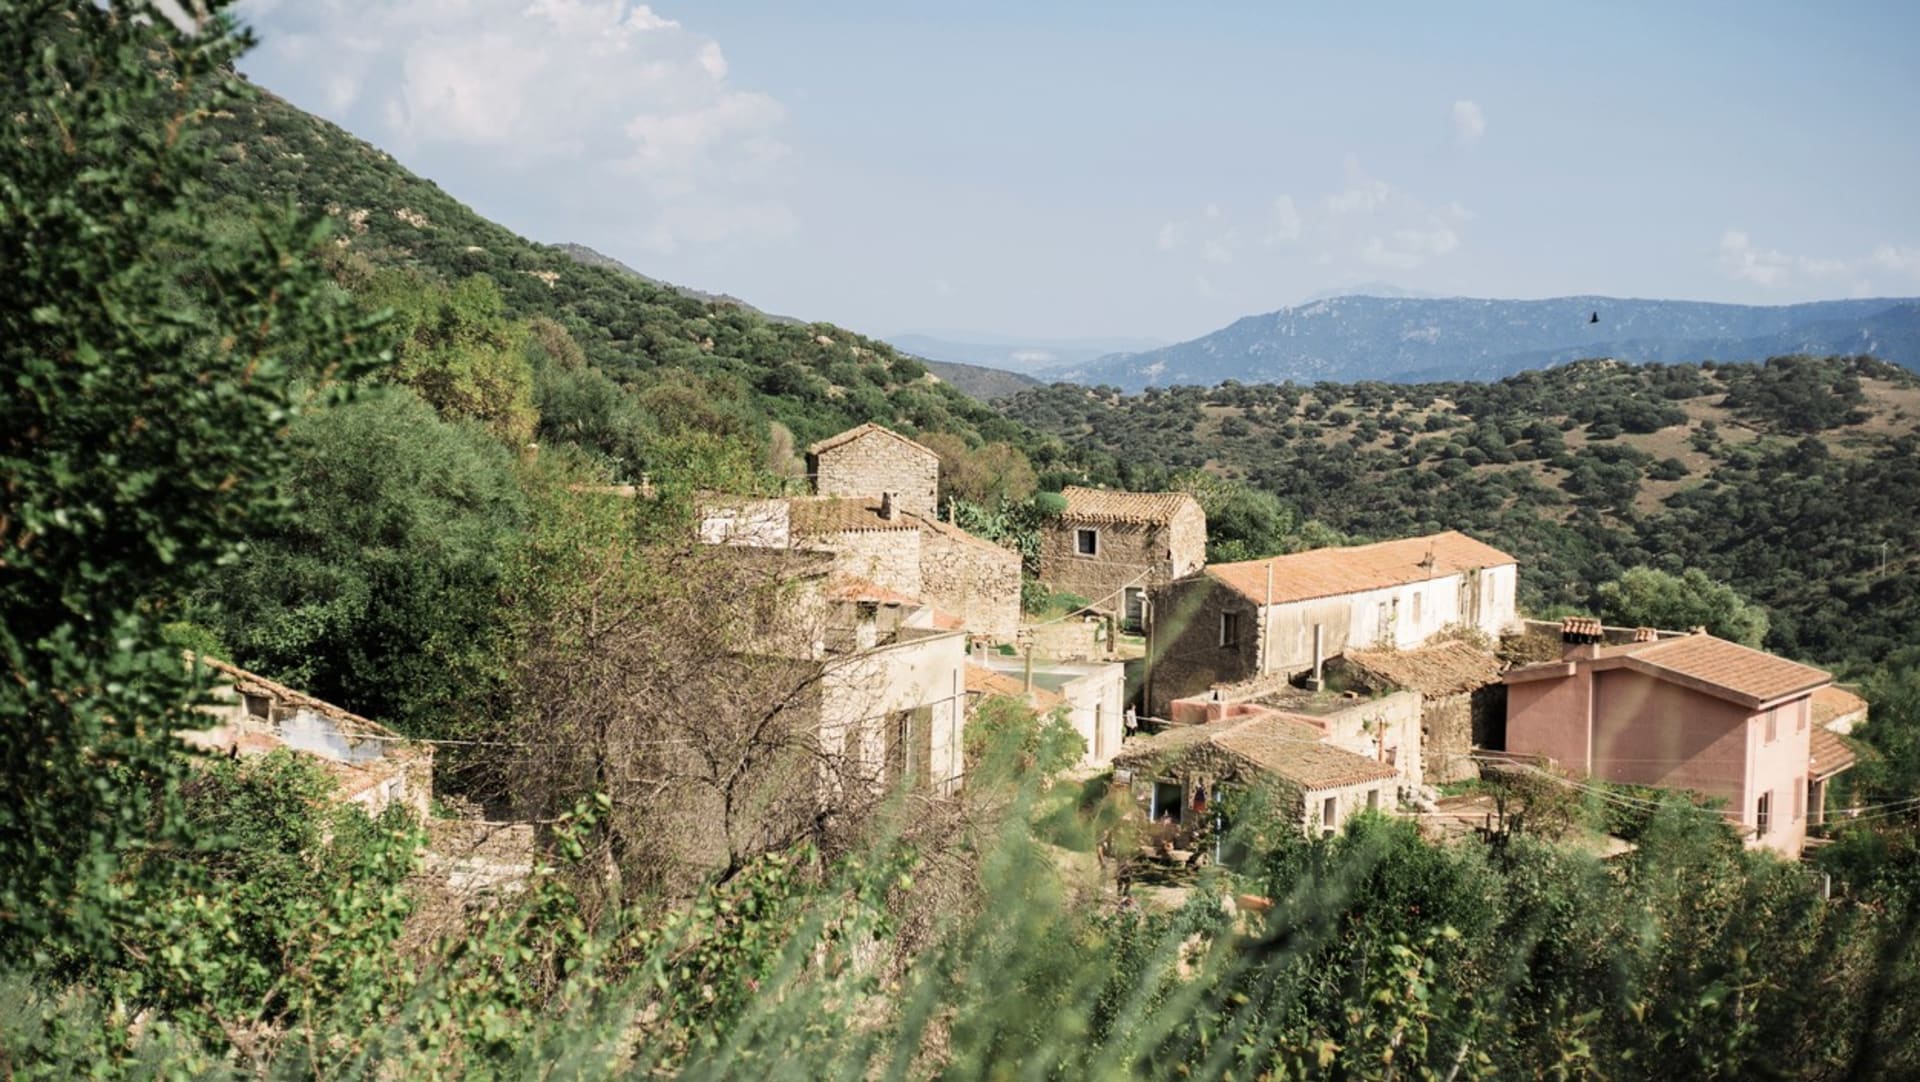 Žadatelé, kteří se přestěhují do obce ve vnitrozemí Sardinie s méně než 3 000 obyvateli, obdrží platbu až do výše 15 000 eur (přibližně 350 000 Kč).